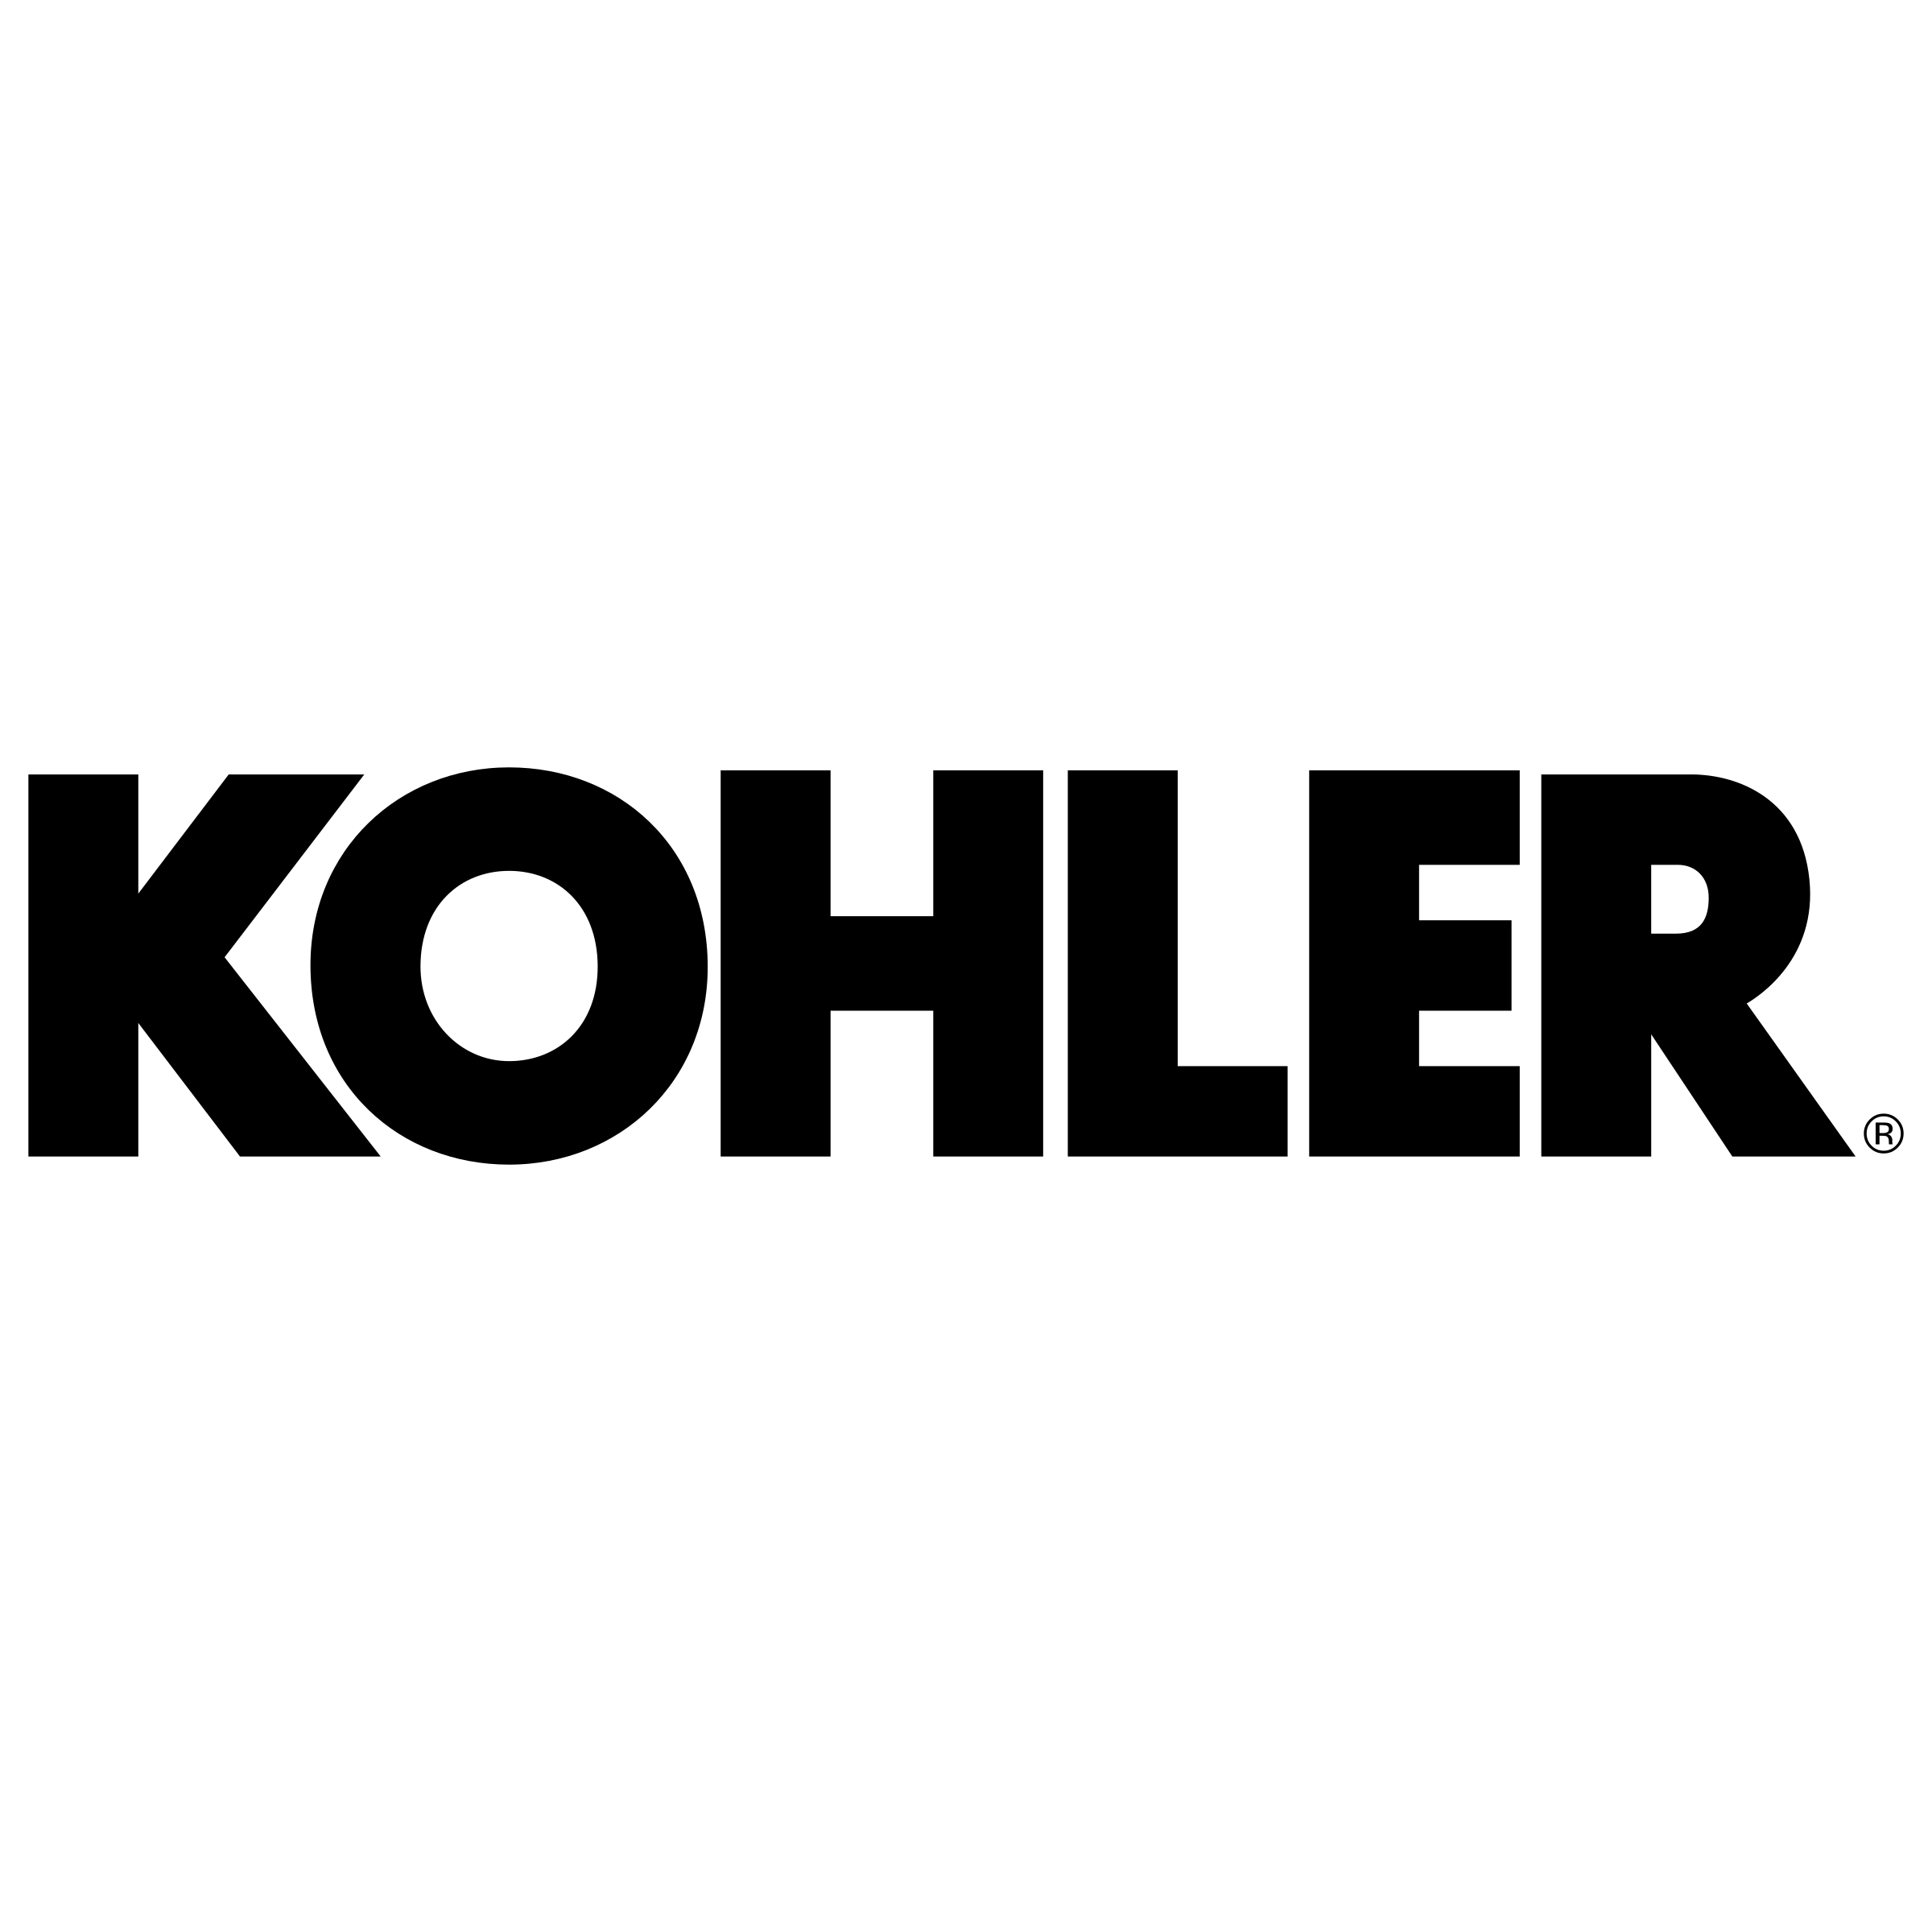 kohler-1-logo-png-transparent